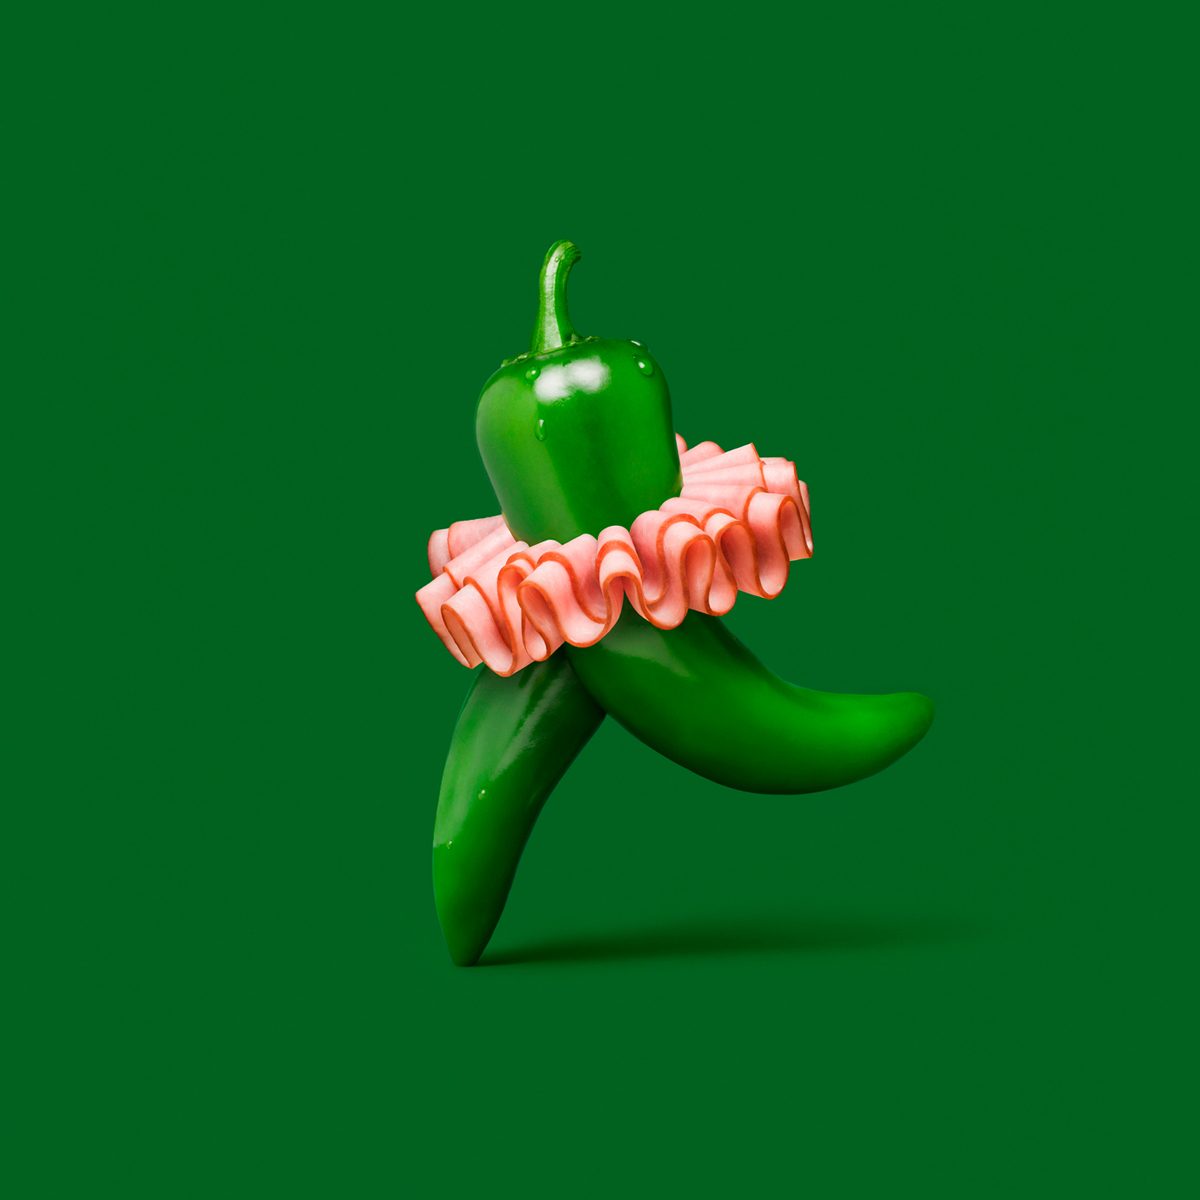 Des mises en scène étonnantes réalisées avec des légumes pour Subway